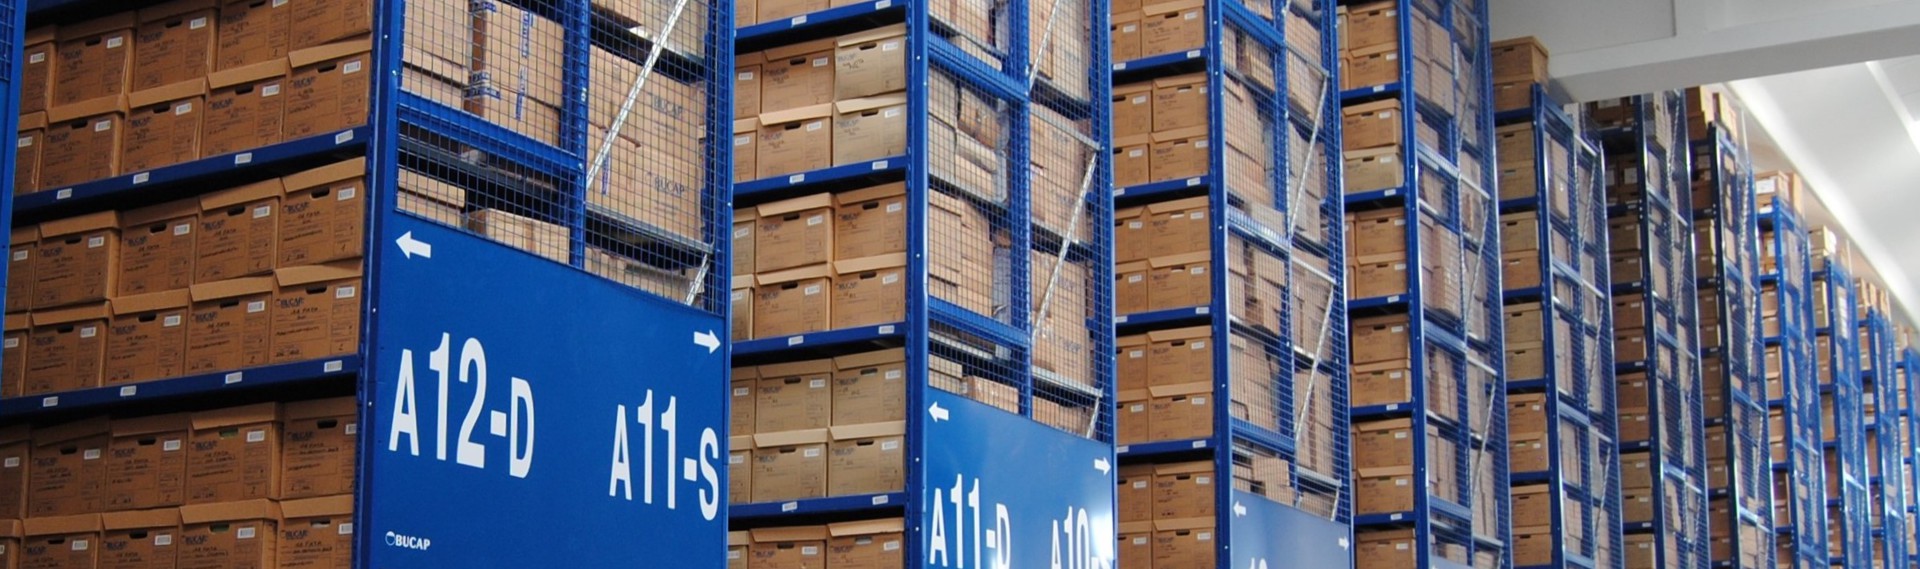   Attraverso le scaffalature porta scatole, sacma offre ampie soluzioni le esigenzze logistiche dei clienti nell'ambito del picking manuale  